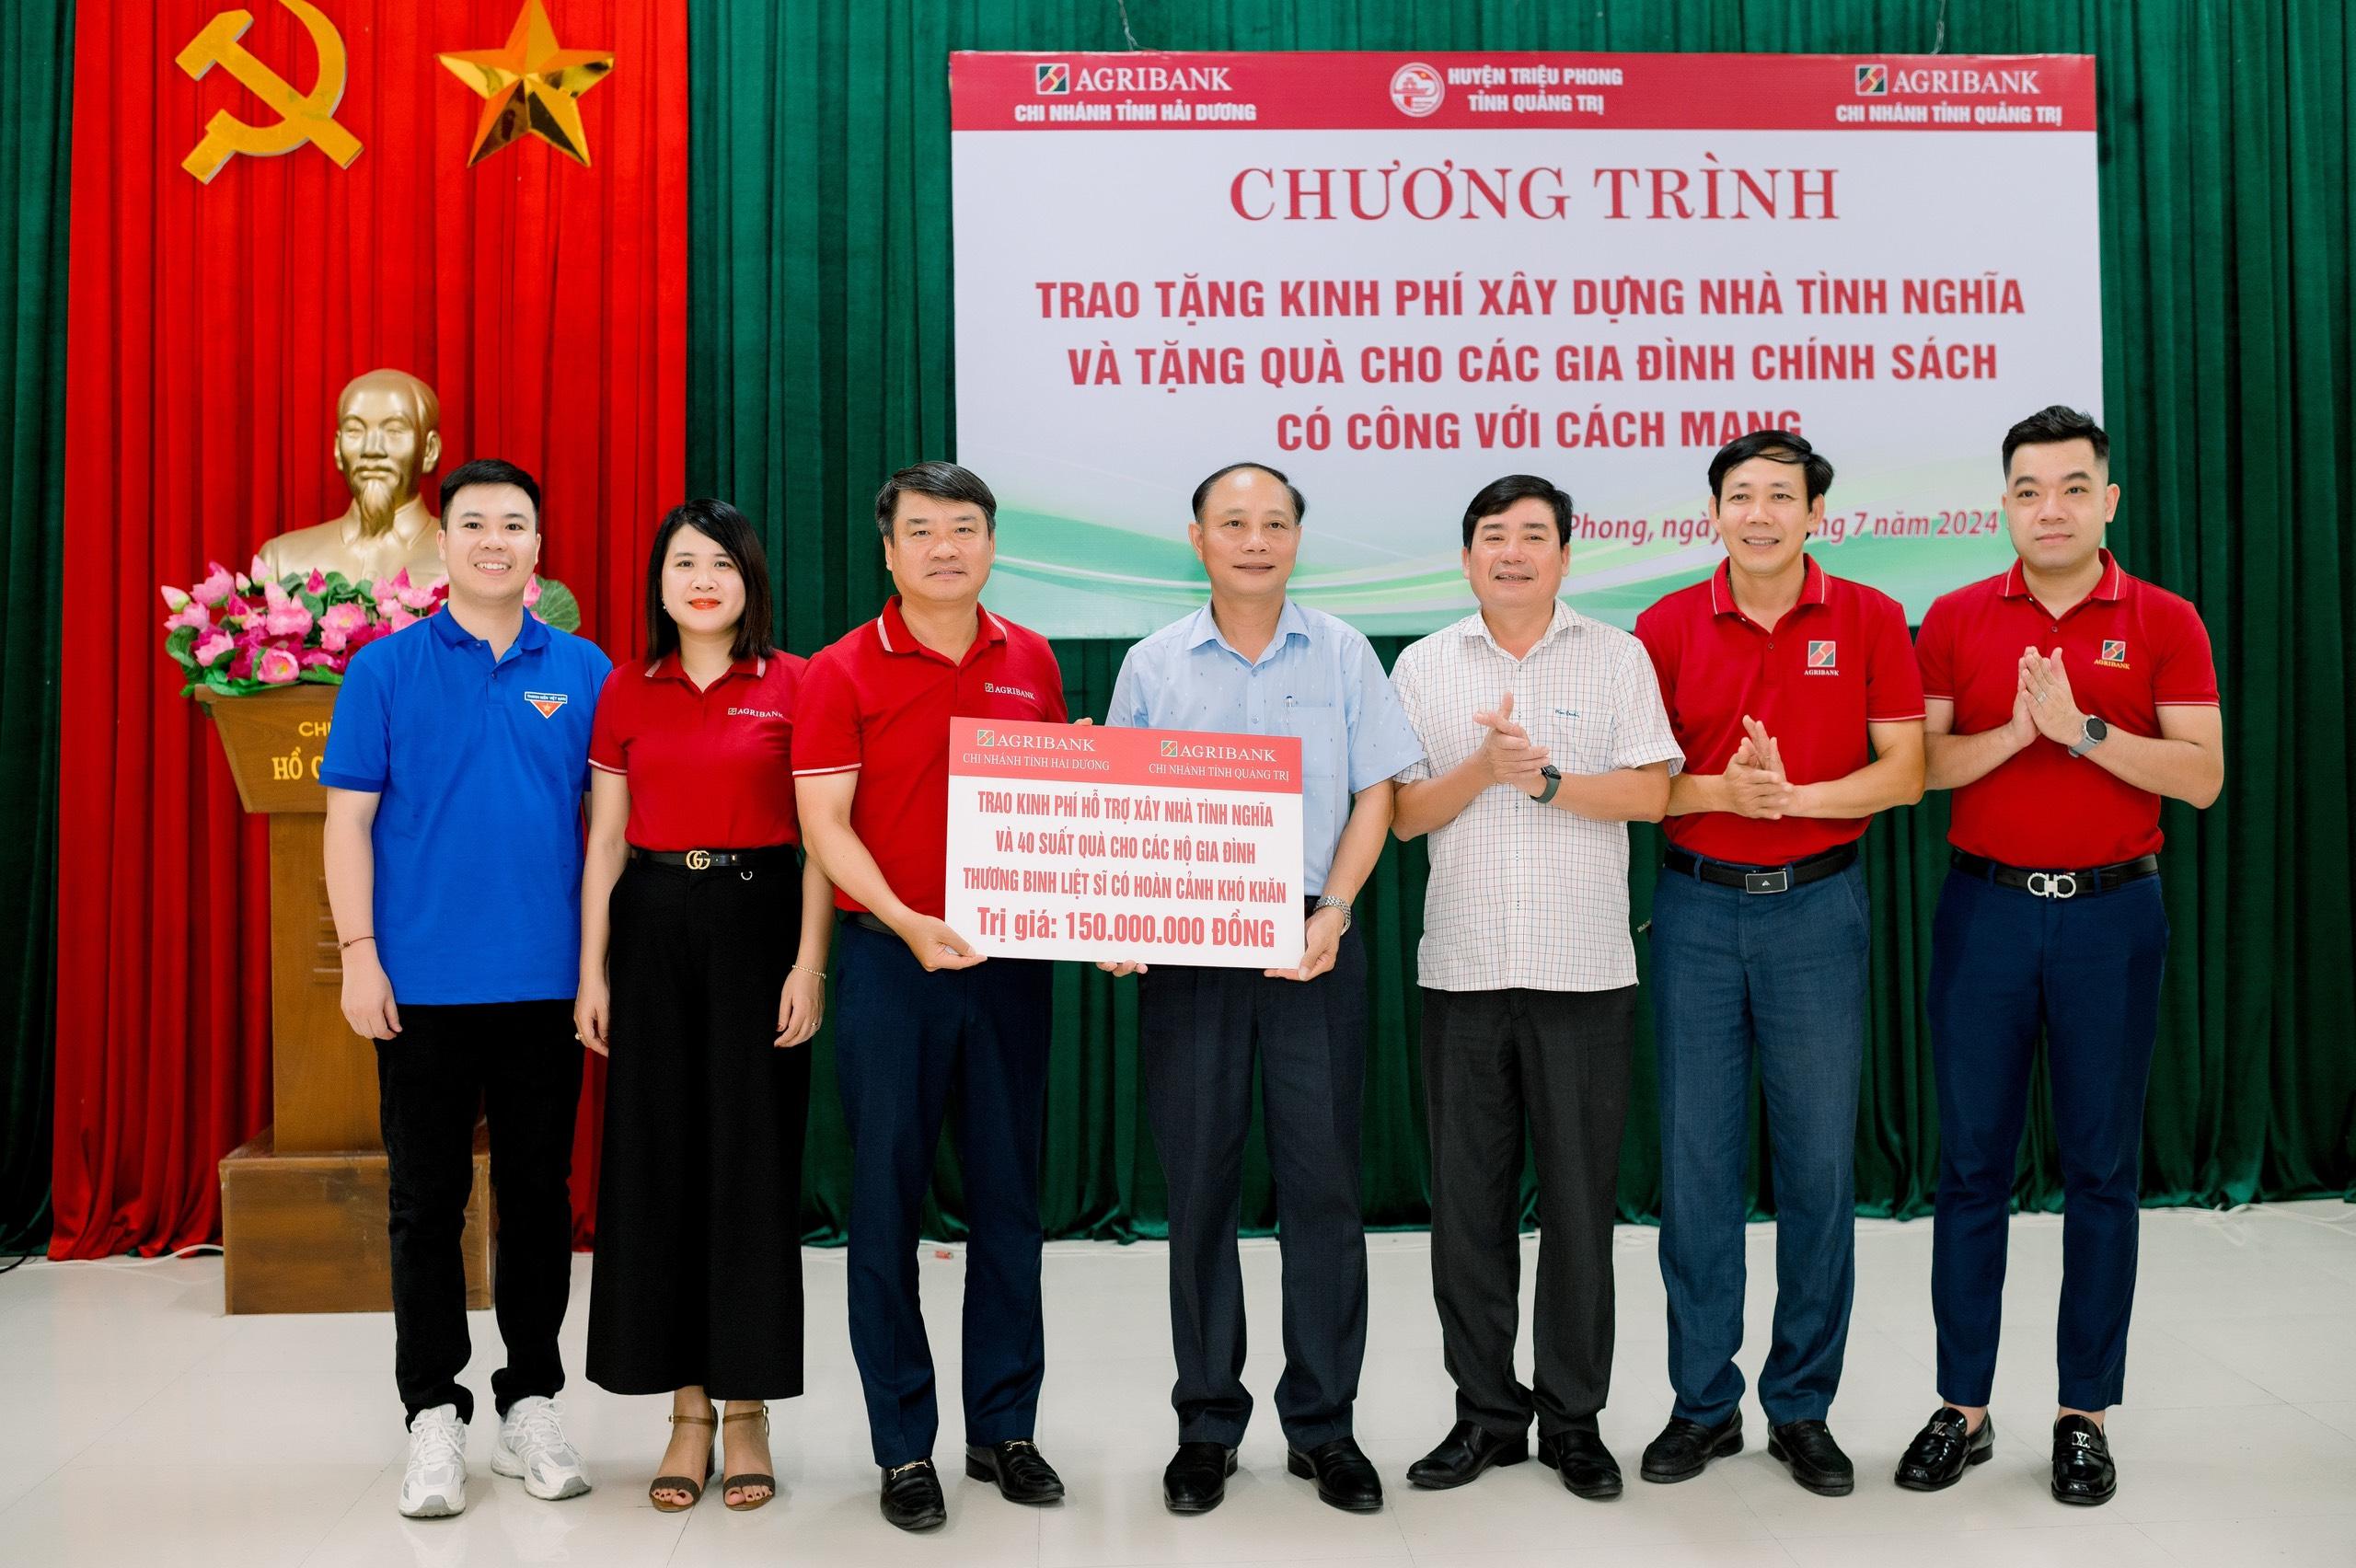 Agribank Chi nhánh tỉnh Hải Dương trao quà an sinh xã hội tại huyện Triệu Phong